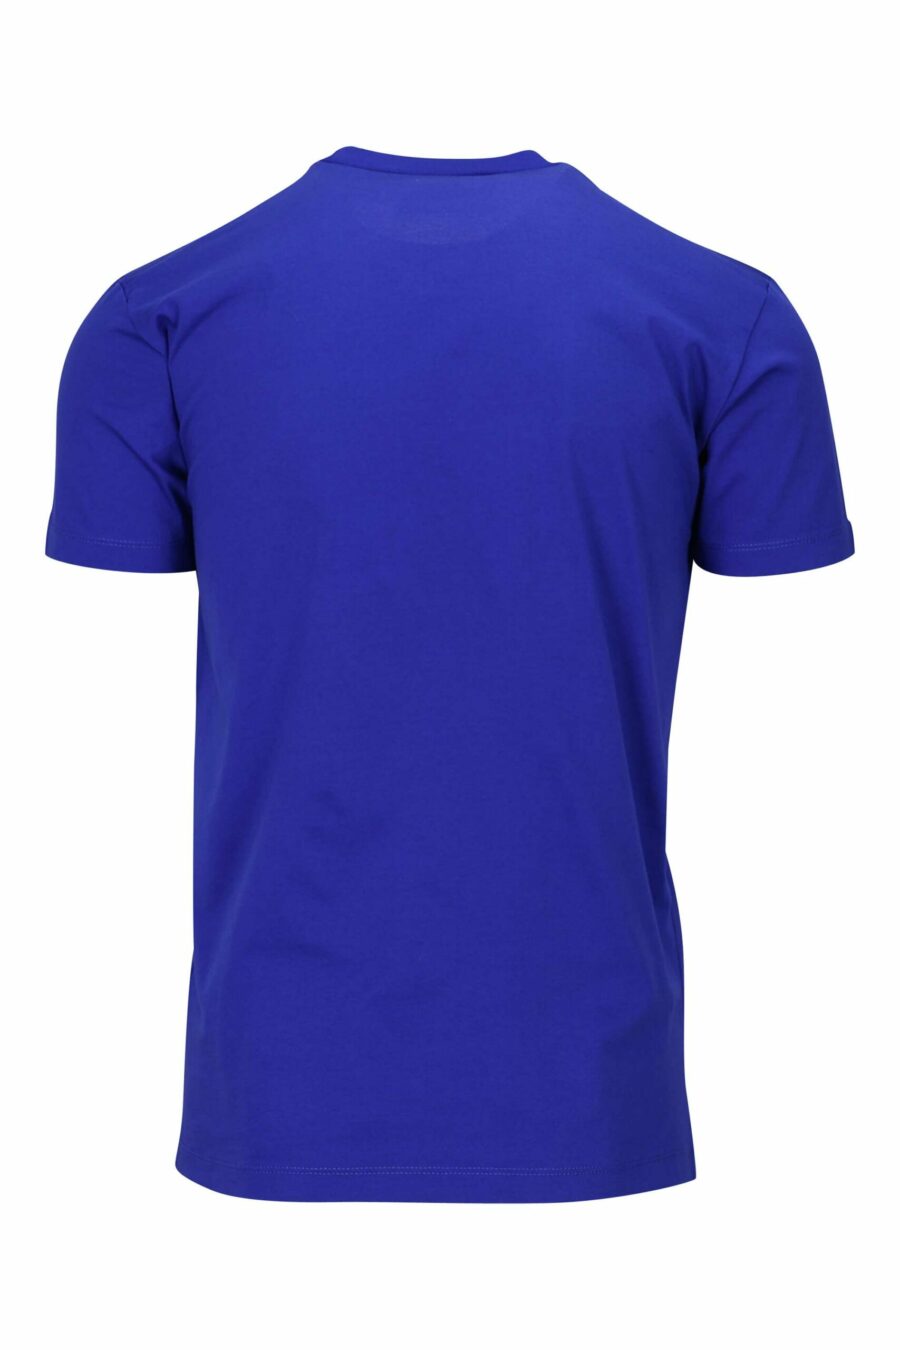 Camiseta azul electrico con maxilogo "icon" blanco - 8054148035525 1 scaled